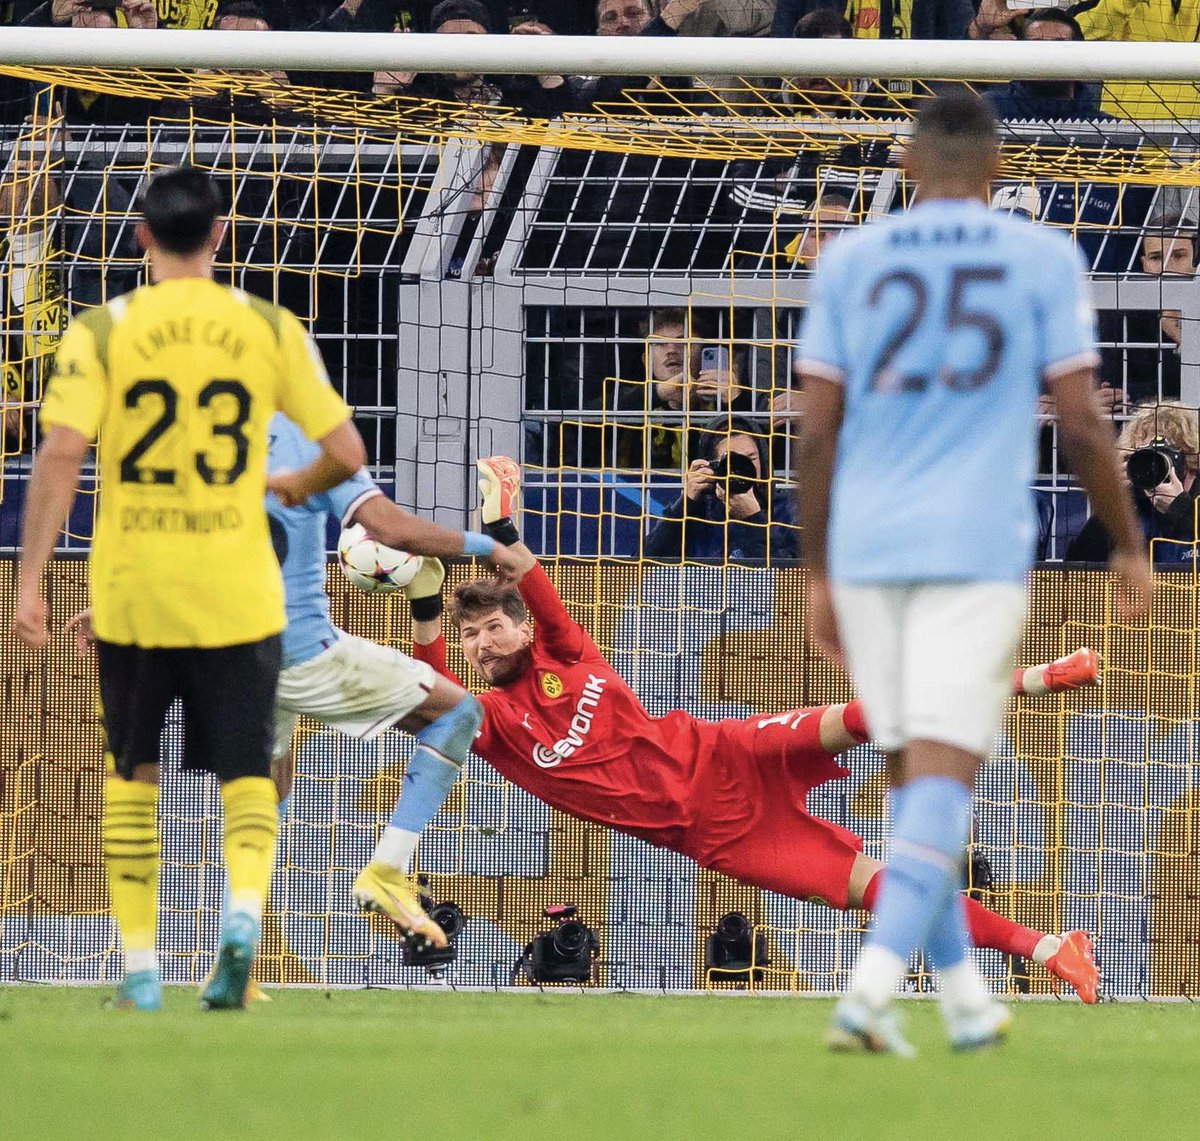 Riyad Mahrez'in kaçırdığı penaltı Manchester City'nin 2016-17 sezonu başlangıcından beri resmi maçlarda gole çeviremediği 25.penaltı vuruşu oldu. #ManchesterCity